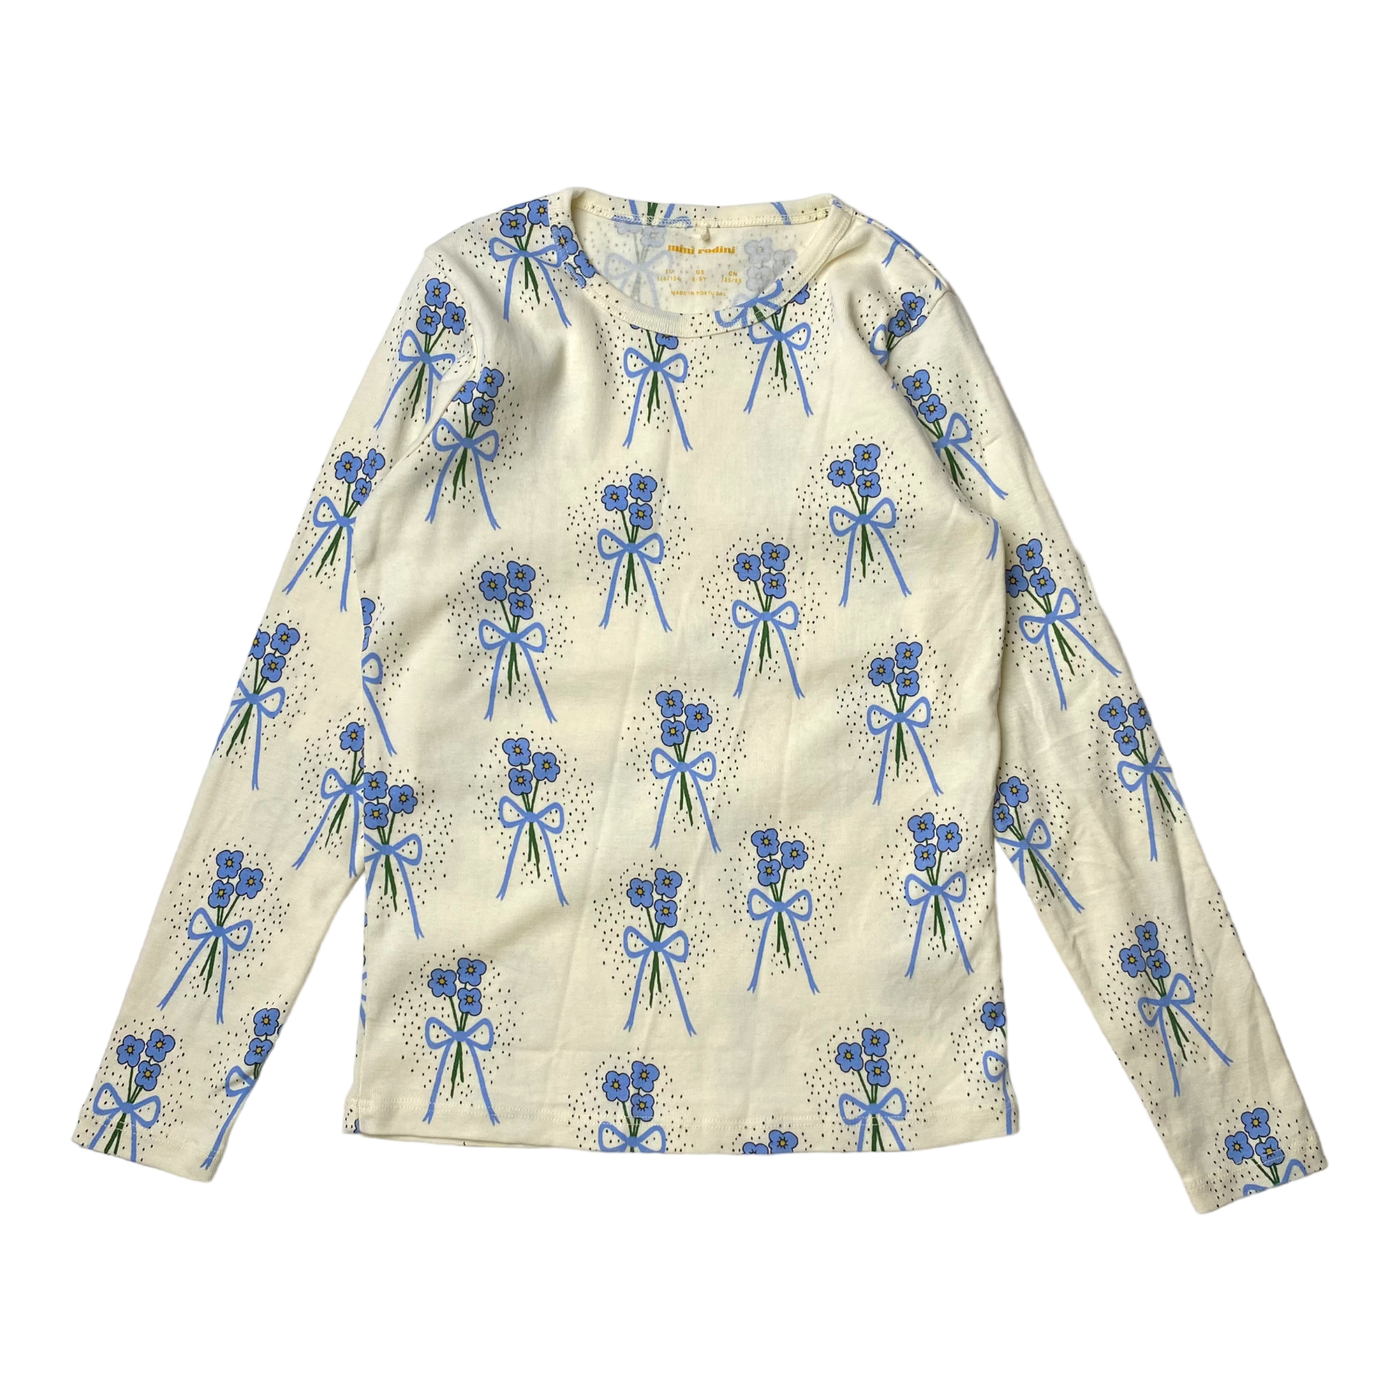 Mini Rodini shirt, flowers | 128/134cm